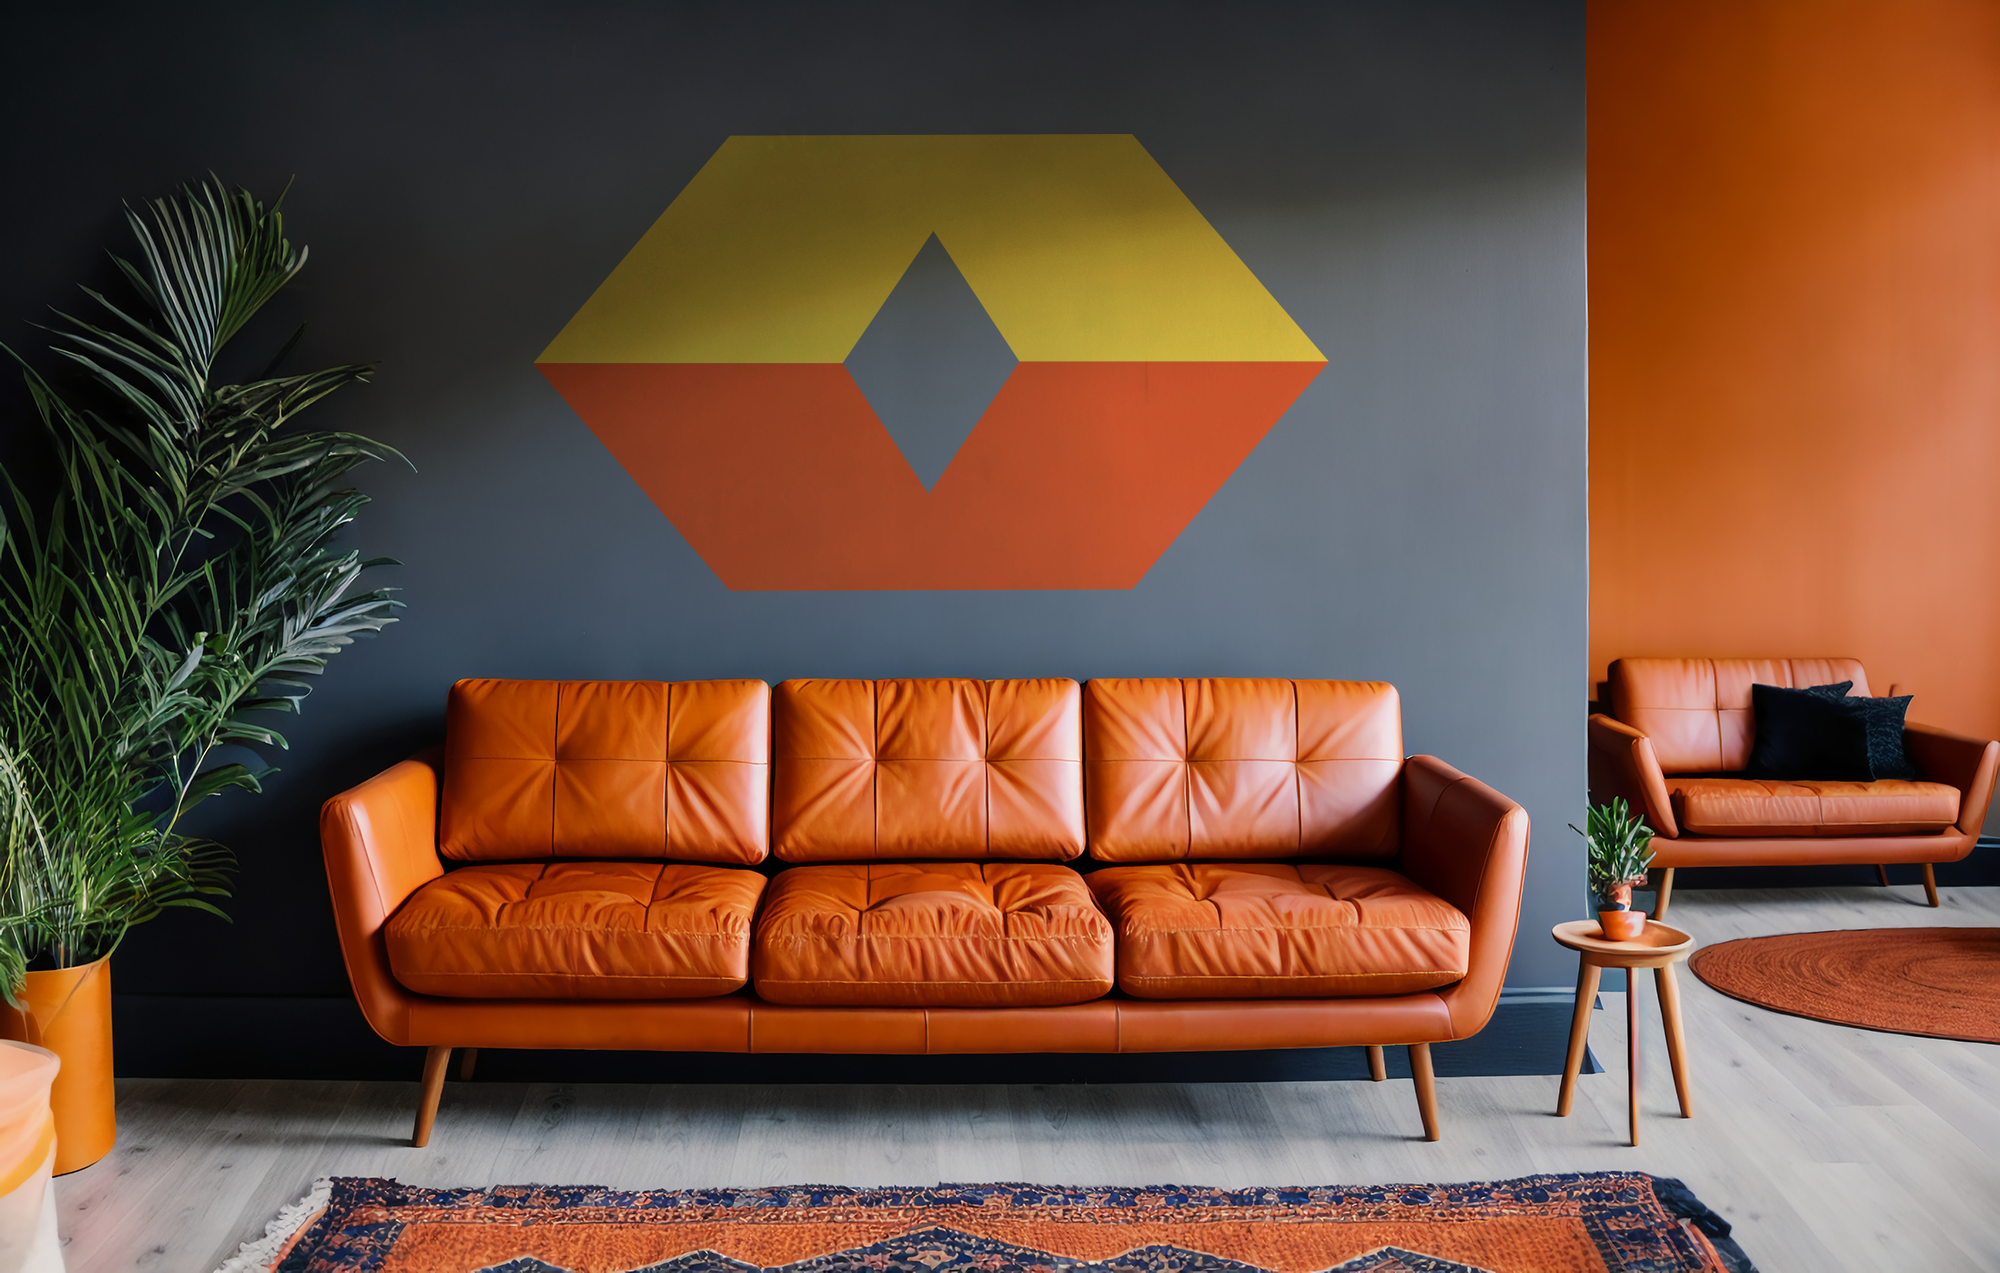 En en rostbrun skinnsoffa framför en gråmålad vägg med vår logotyp.